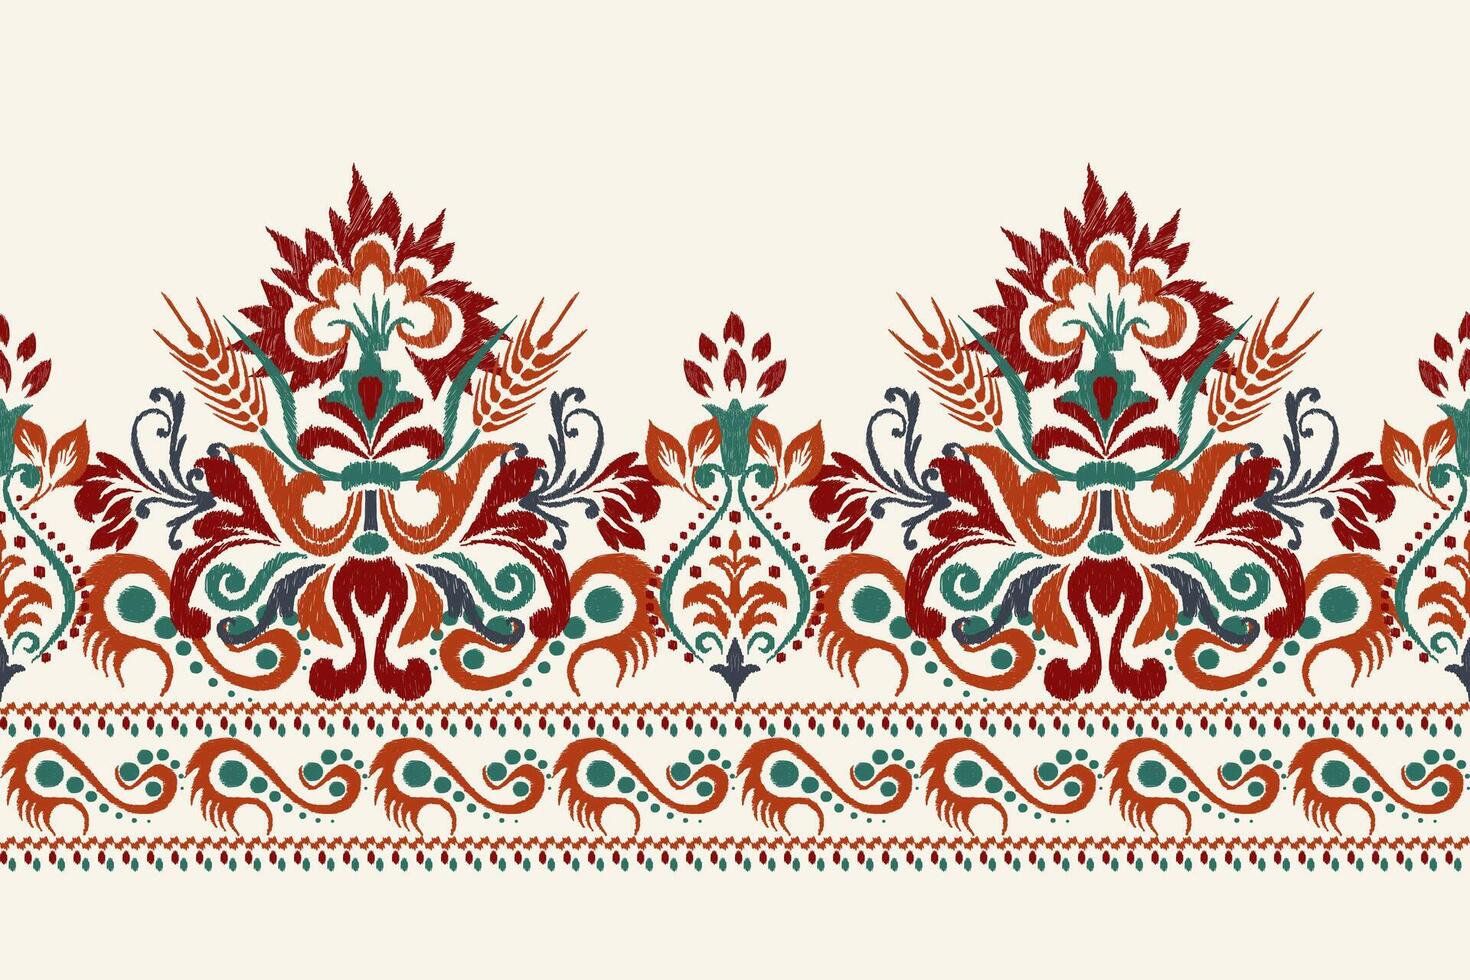 digital målning vattenfärg mönster.ikat blommig broderi på vit bakgrund vektor illustration.aztec stil, hand ritade, bläck texture.design för textur, tyg, kläder ,dekoration,sarong,halsduk,tryck.